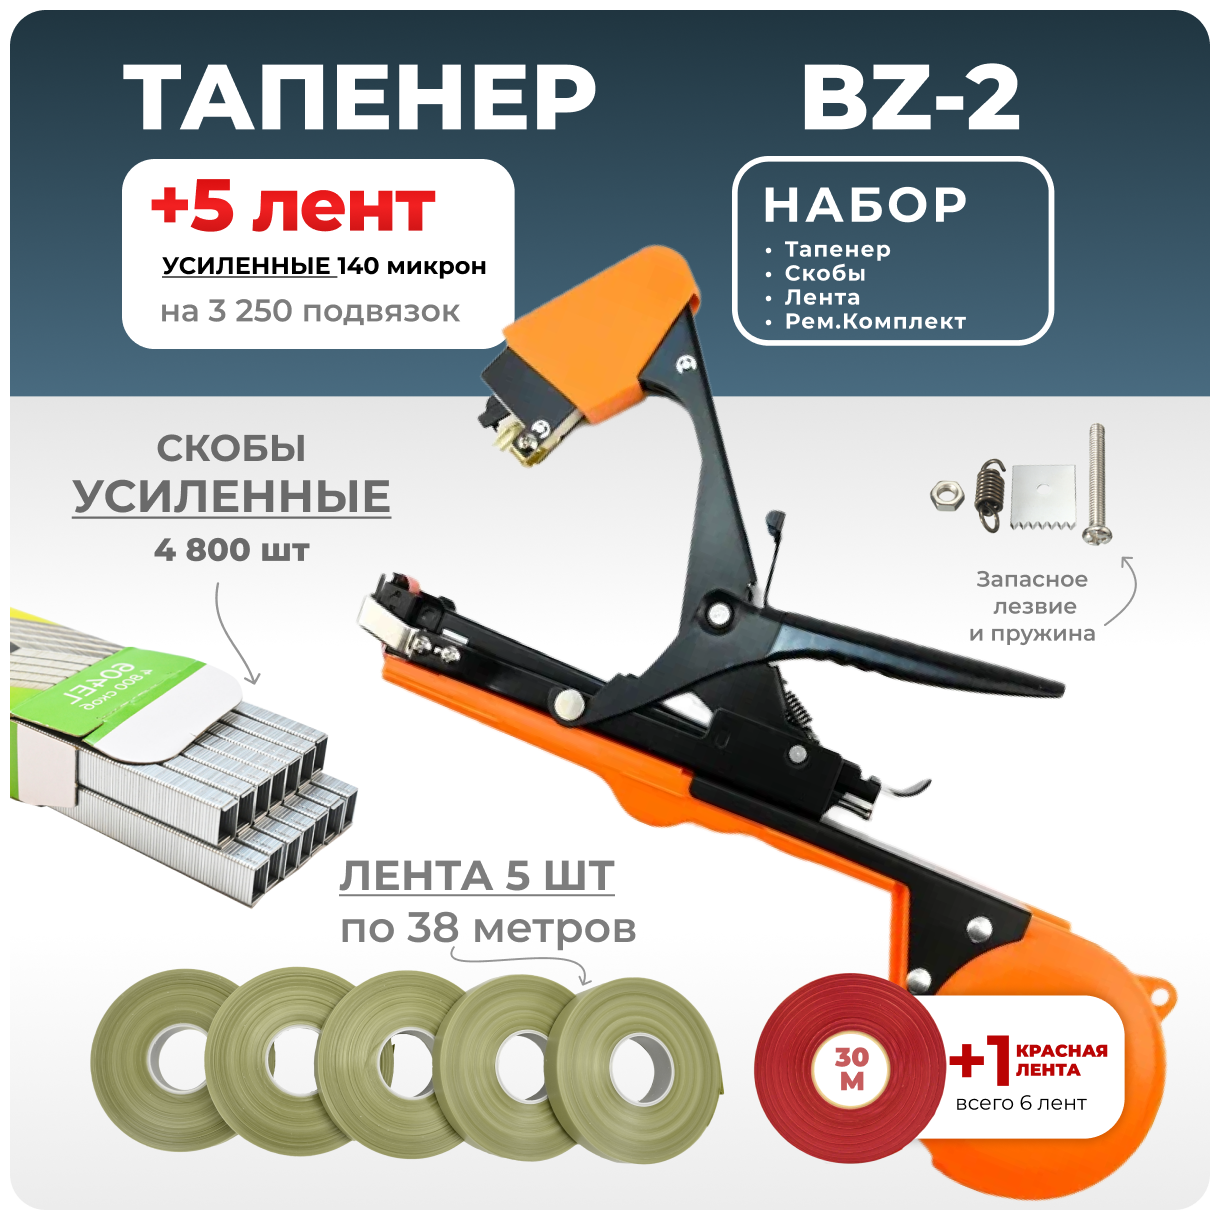 Тапенер для подвязки Bz-2 + 5 оливковых лент + скобы Агромадана 4.800 шт + ремкомплект / Готовый комплект для подвязки - фотография № 1